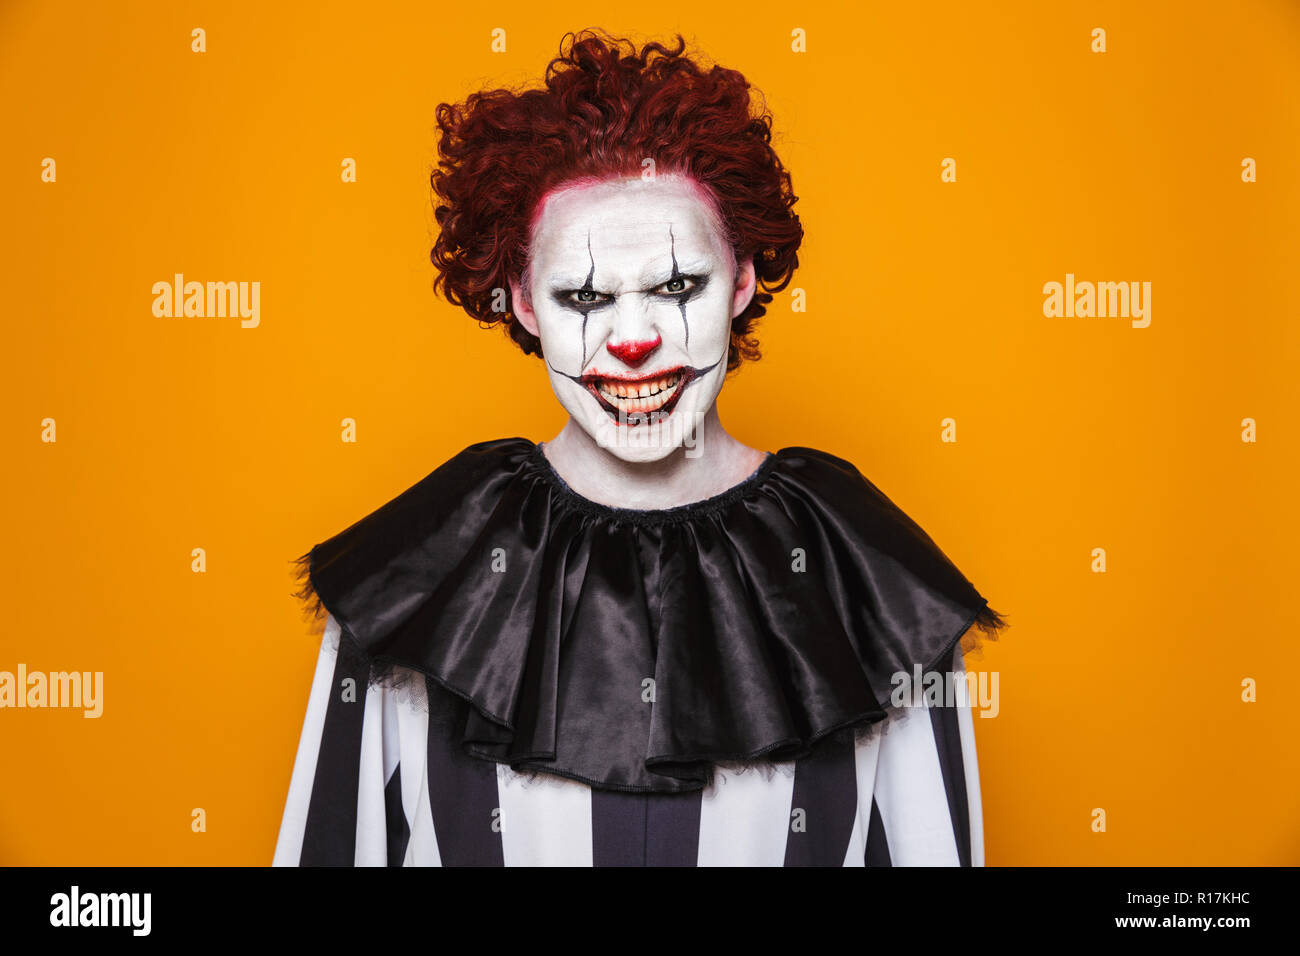 Angry clown uomo 20s indossando il costume nero e Halloween trucco guardando la telecamera isolate su sfondo giallo Foto Stock